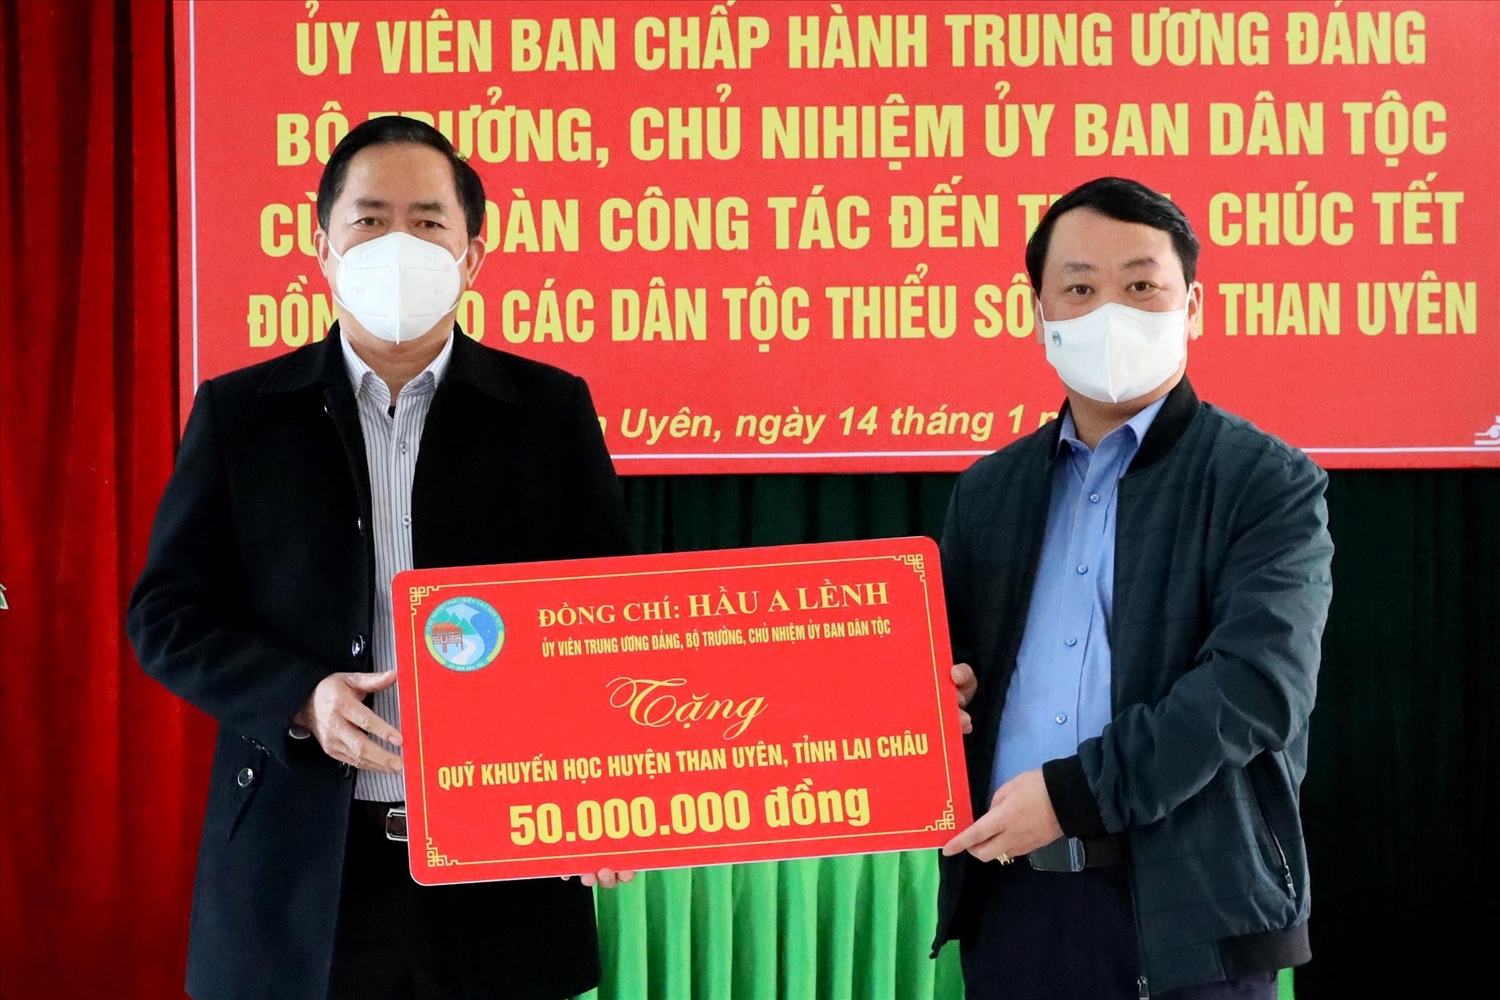 Bộ trưởng, Chủ nhiệm Uỷ ban Dân tộc Hầu A Lềnh tặng 50 triệu đồng cho Quỹ Khuyến học huyện Than Uyên, tỉnh Lai Châu